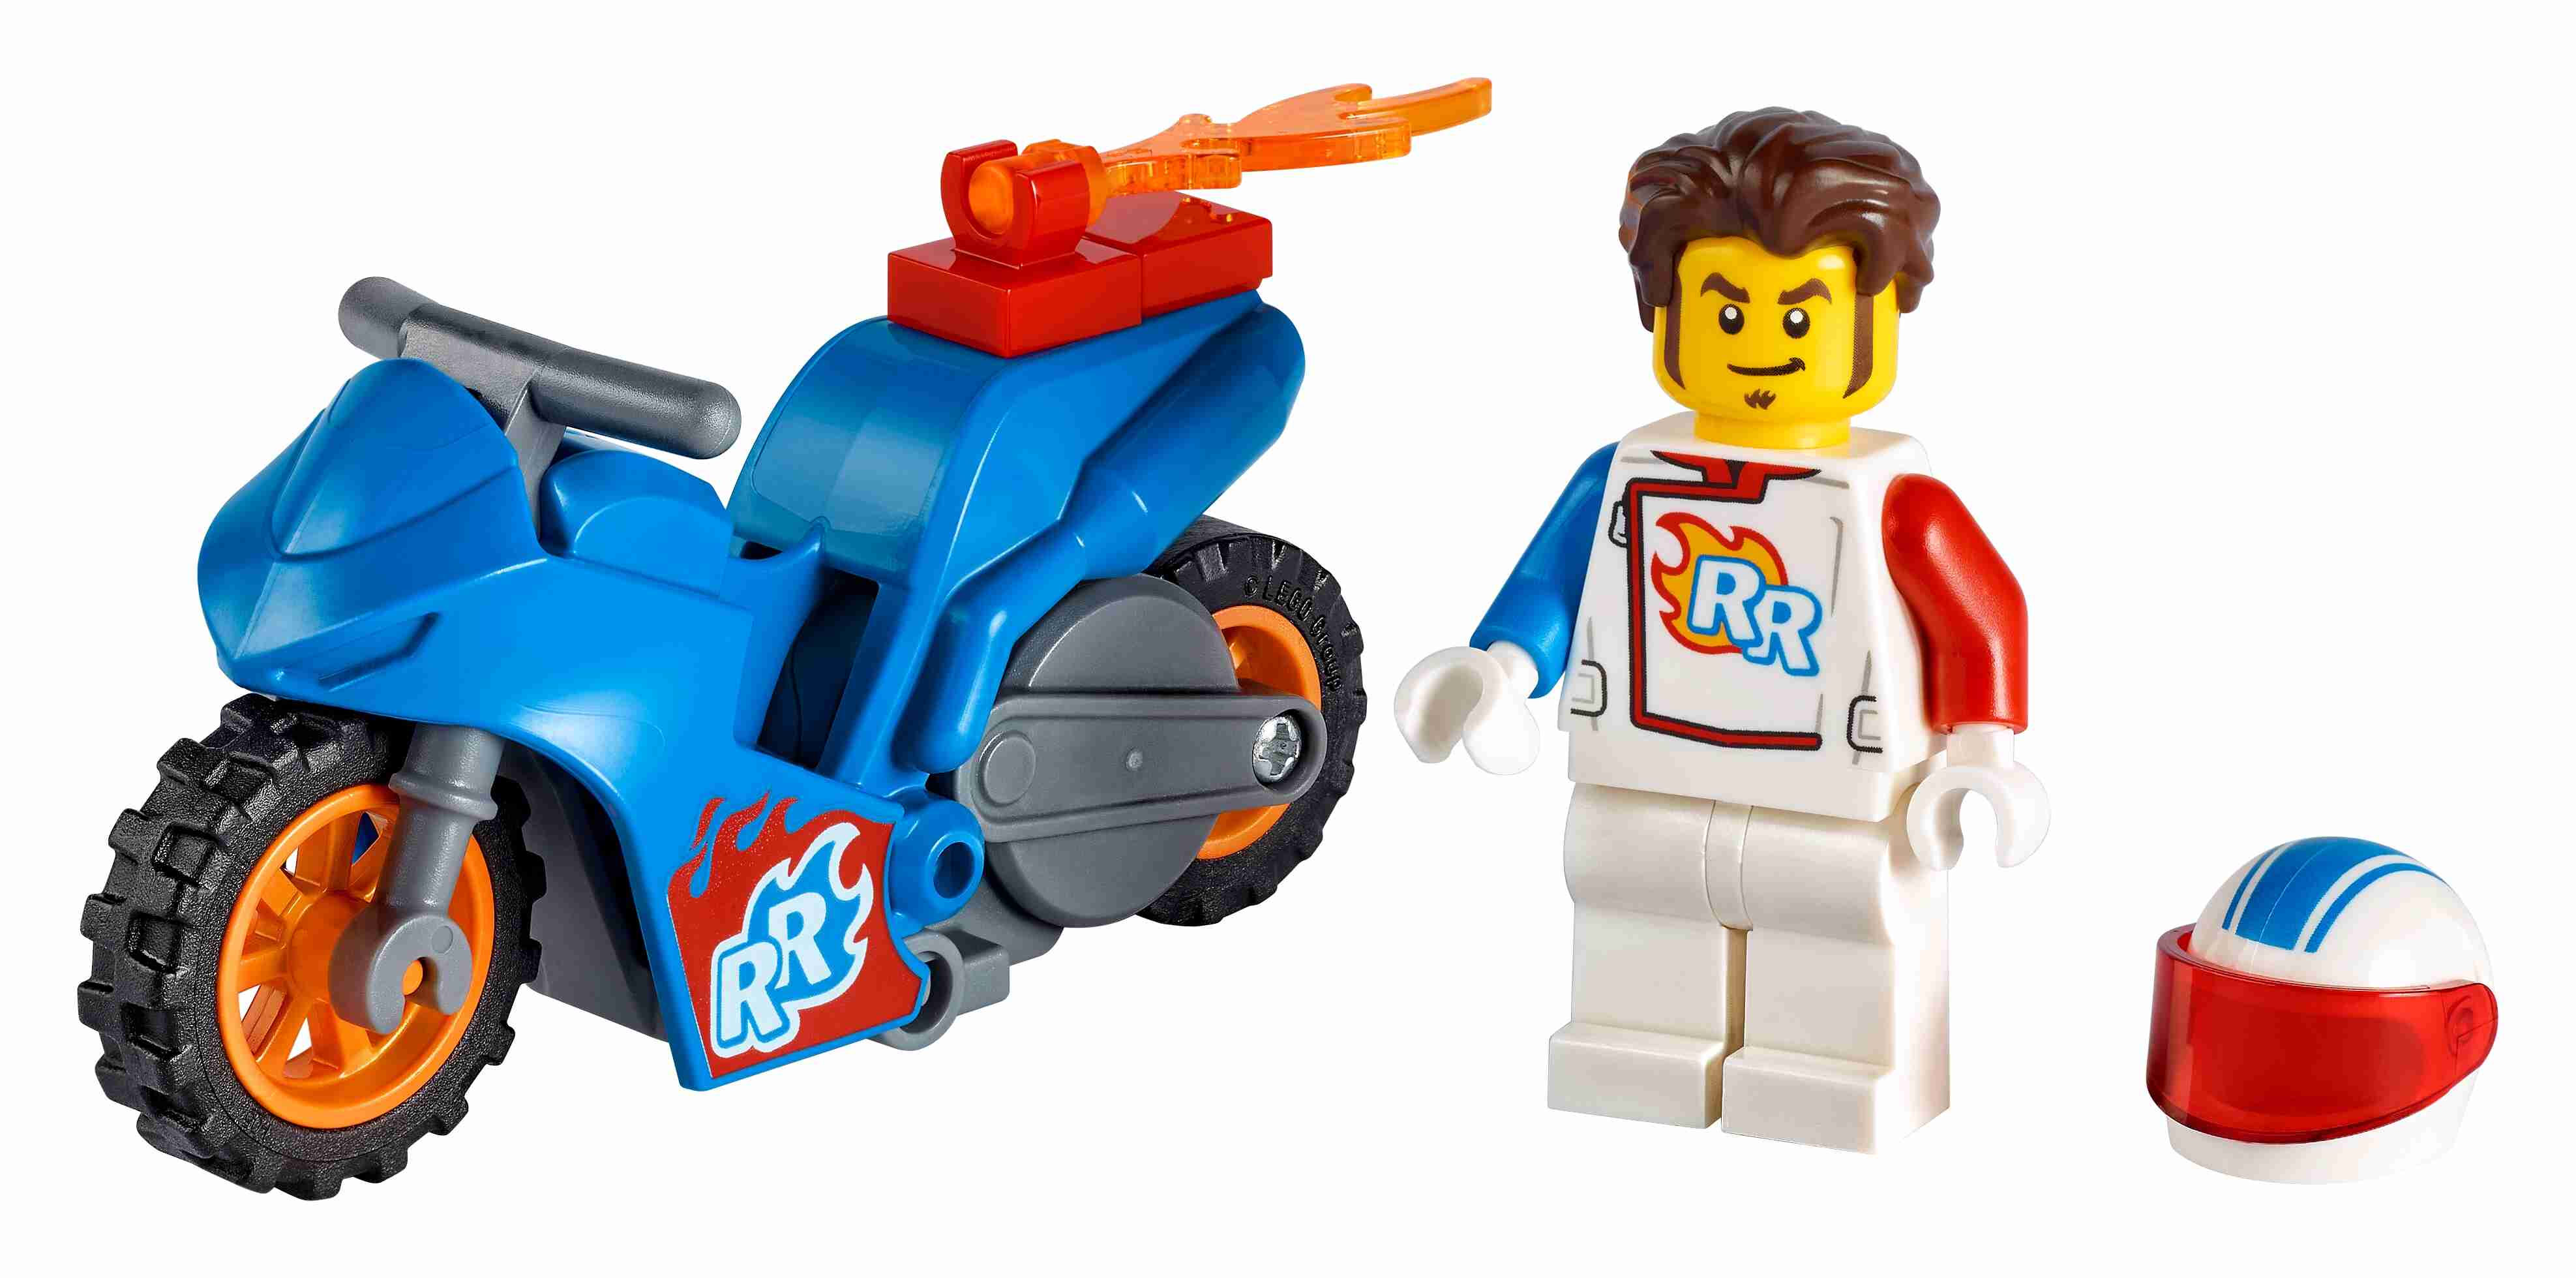 LEGO 60284 City Baustellen-LKW, Straßenarbeiter-Minifigur, Ratte:  Lobigo.de: Spielzeug